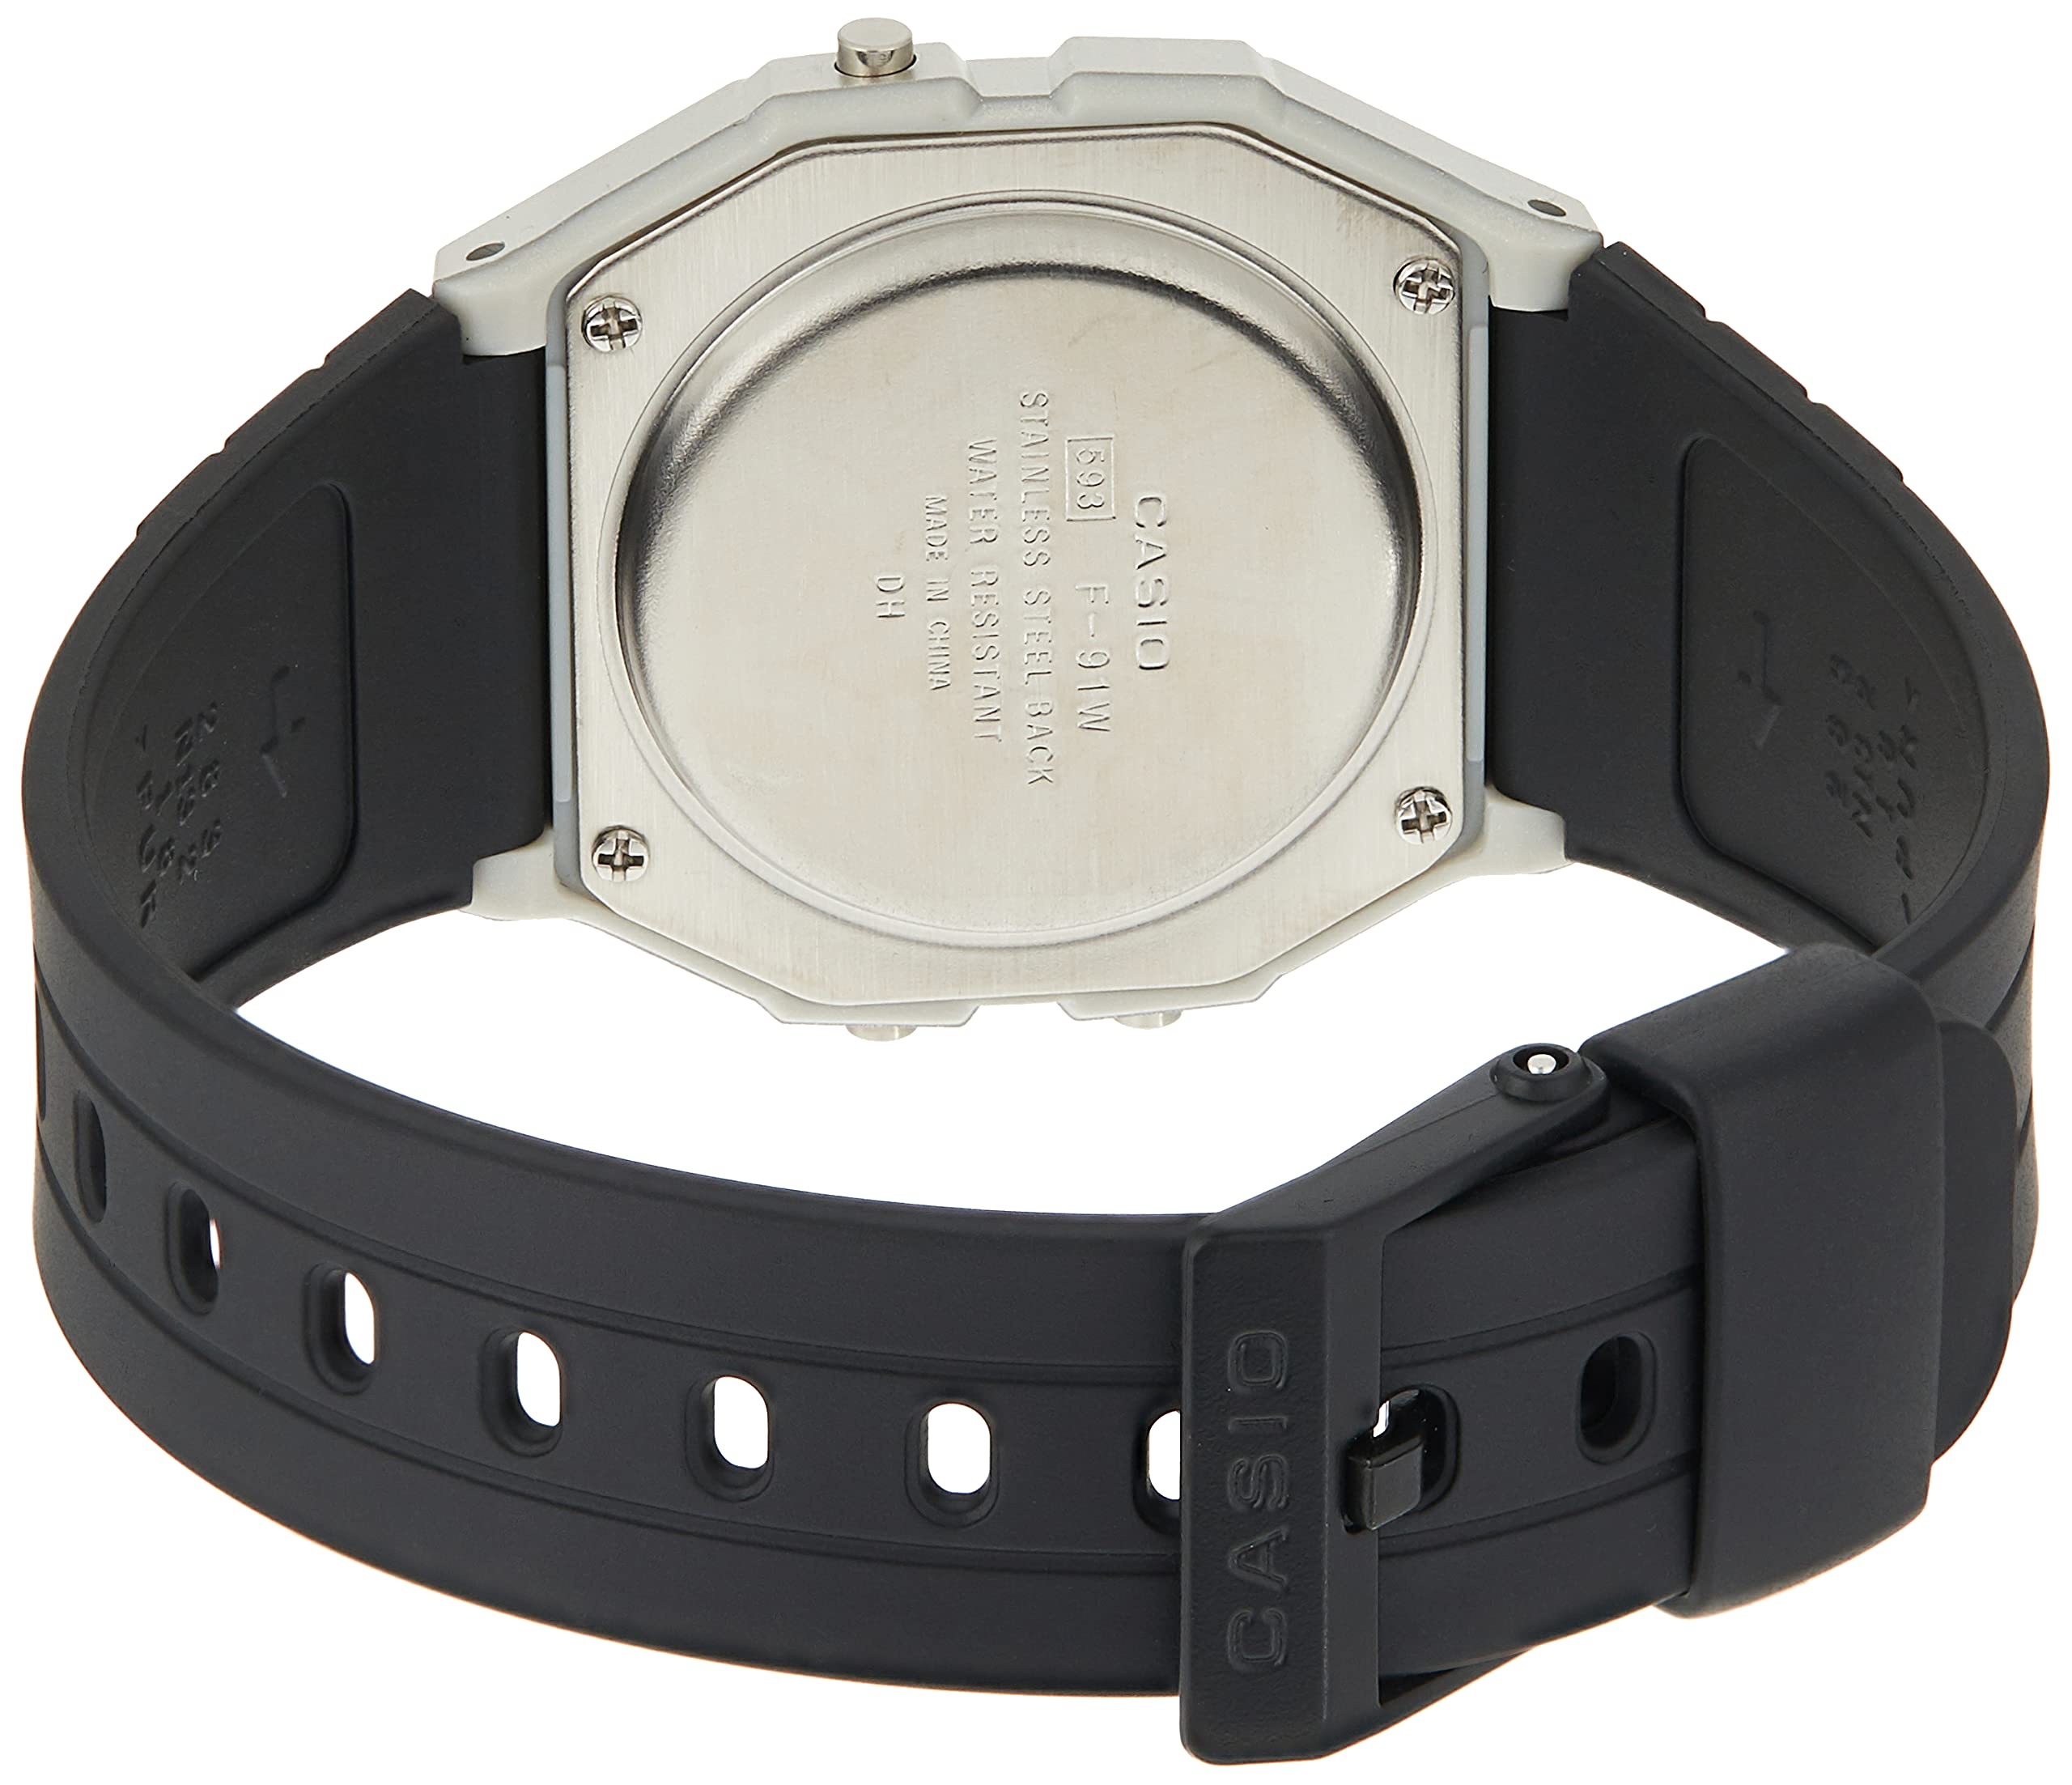 Casio Men's Classic F91WM-7A Silver Silicone Quartz Fashion Watch